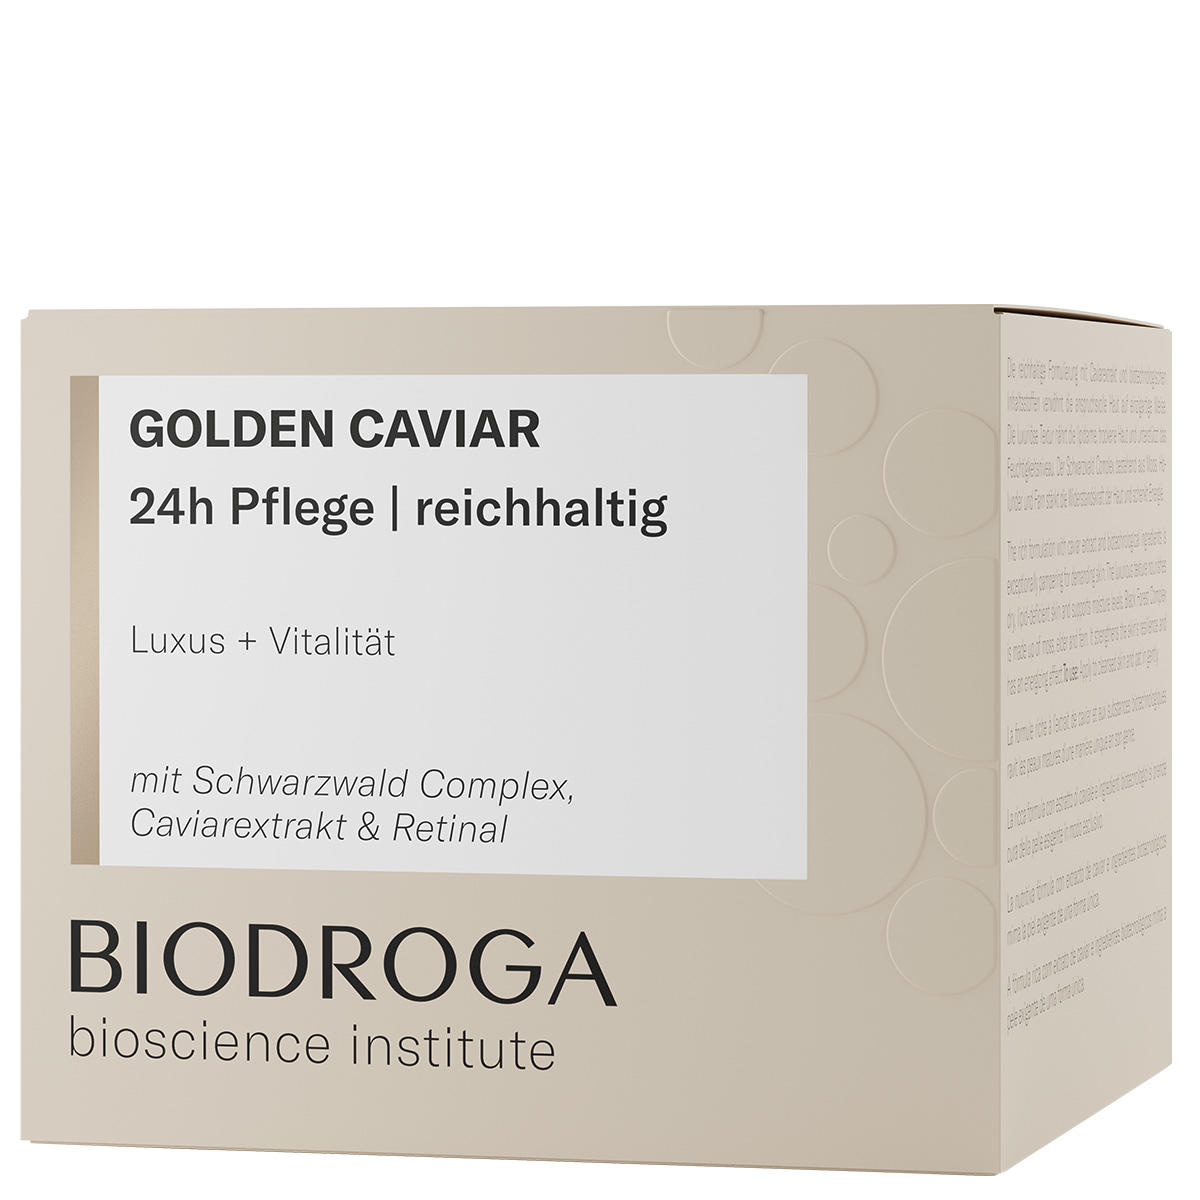 BIODROGA Bioscience Institute GOLDEN CAVIAR 24h Pflege reichhaltig 50 ml - 2